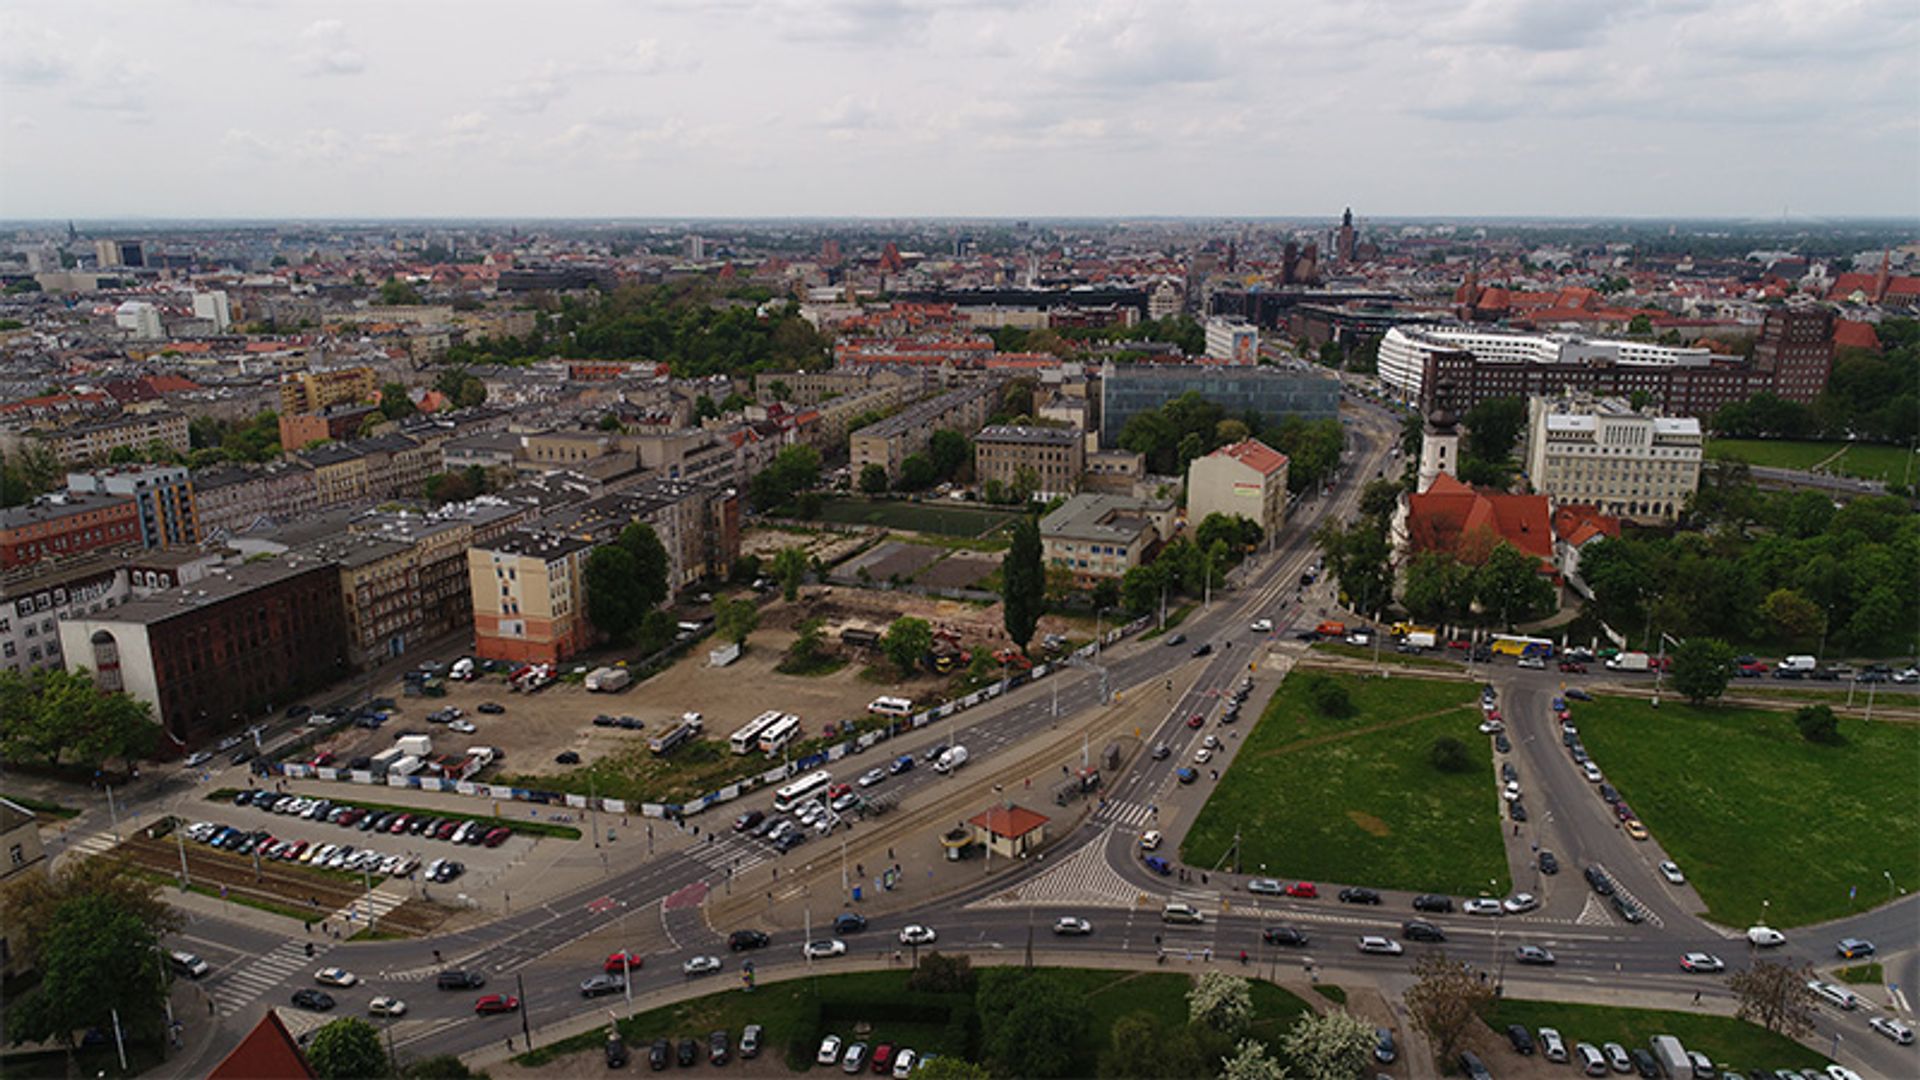  City Forum. W czerwcu ruszy budowa kompleksu biurowego tuż przy placu Wróblewskiego